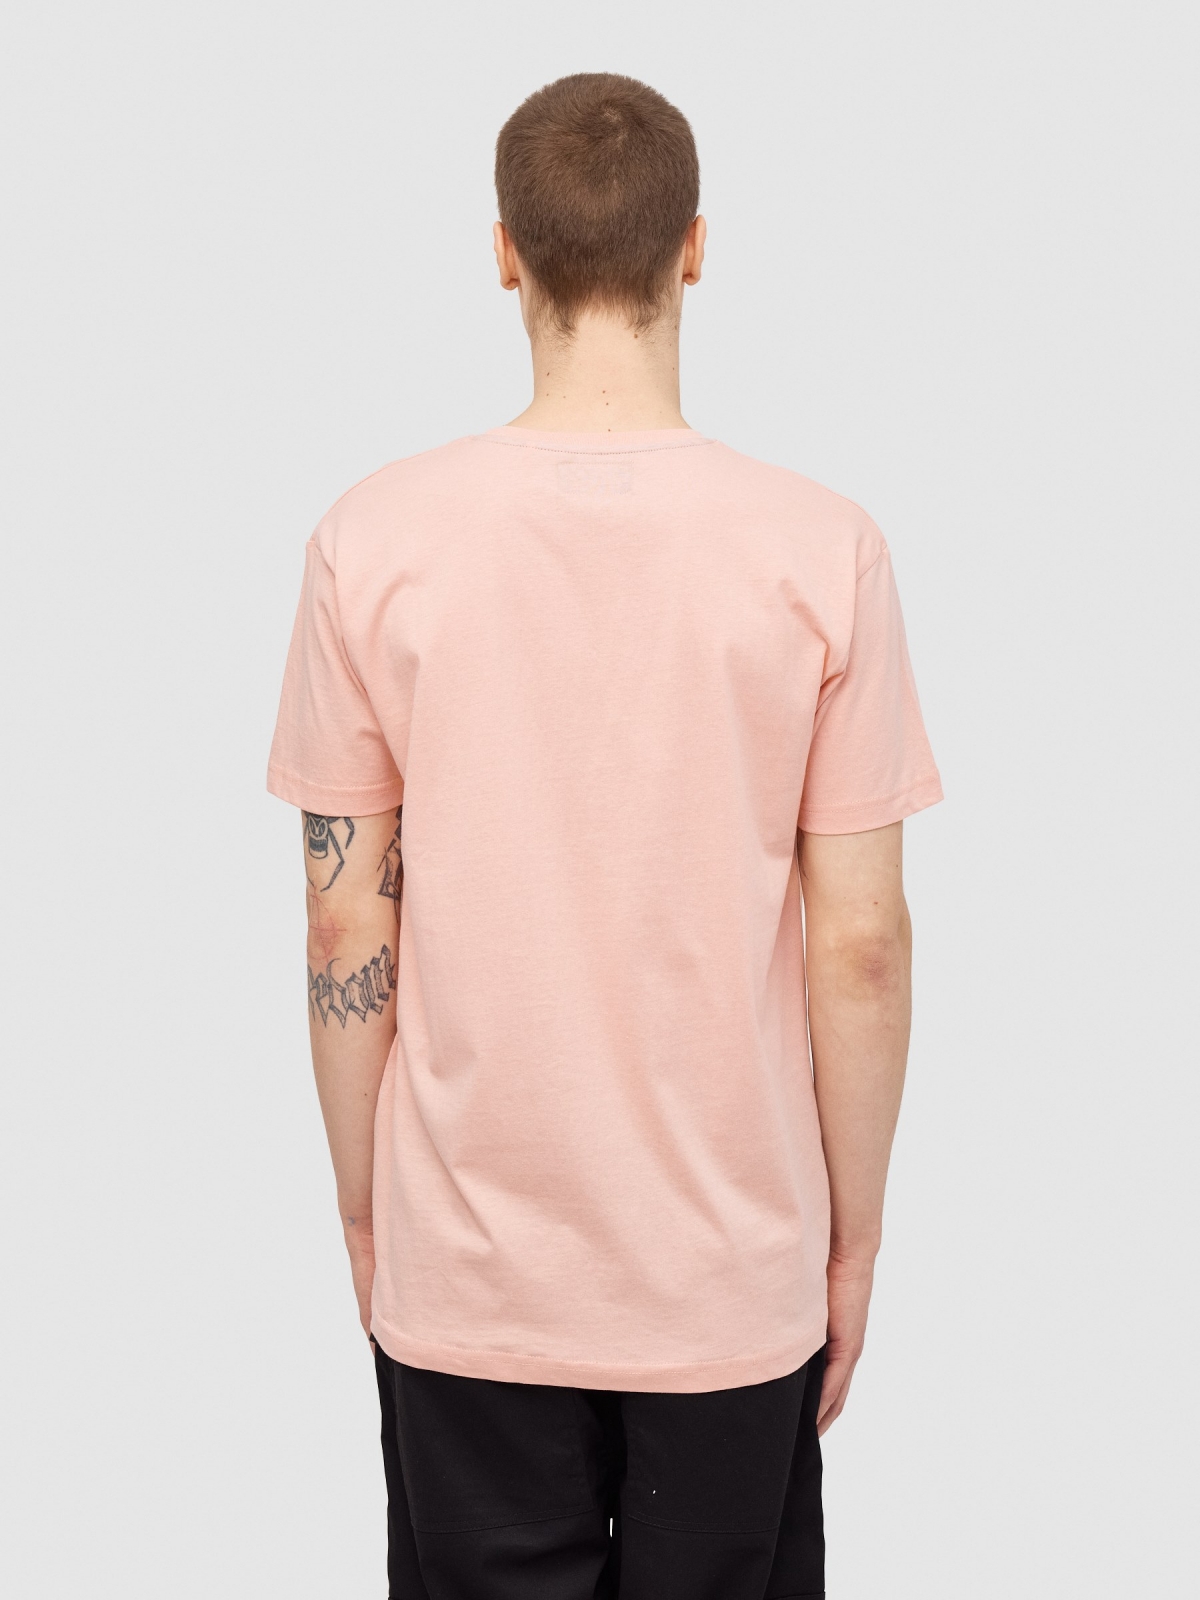 Camiseta INSIDE urban rosa vista media trasera